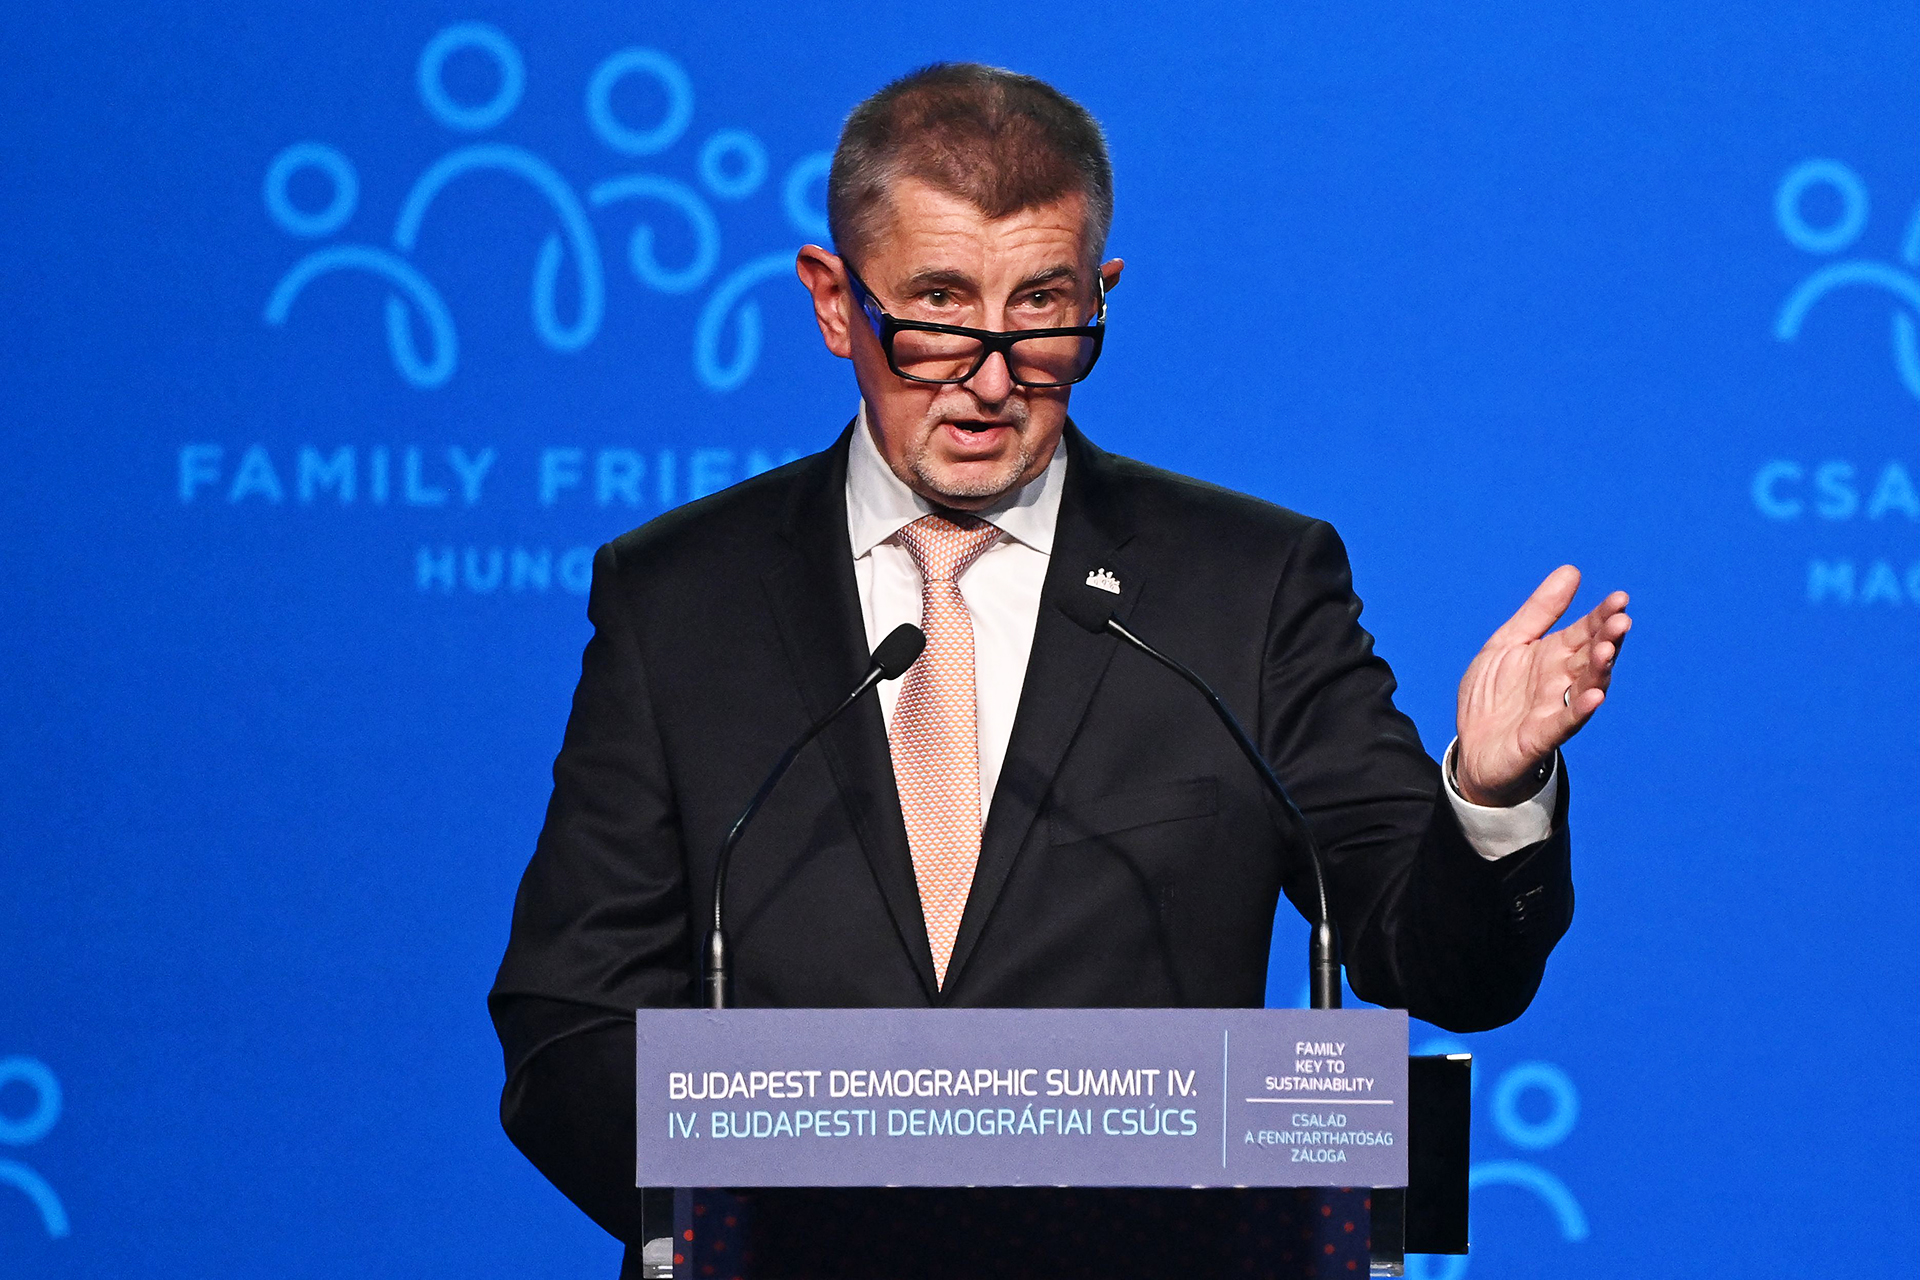 Finnischer Europaabgeordneter: Die Verbindung zwischen dem tschechischen Ministerpräsidenten und Pandora wird bei einem Parteitreffen angesprochen